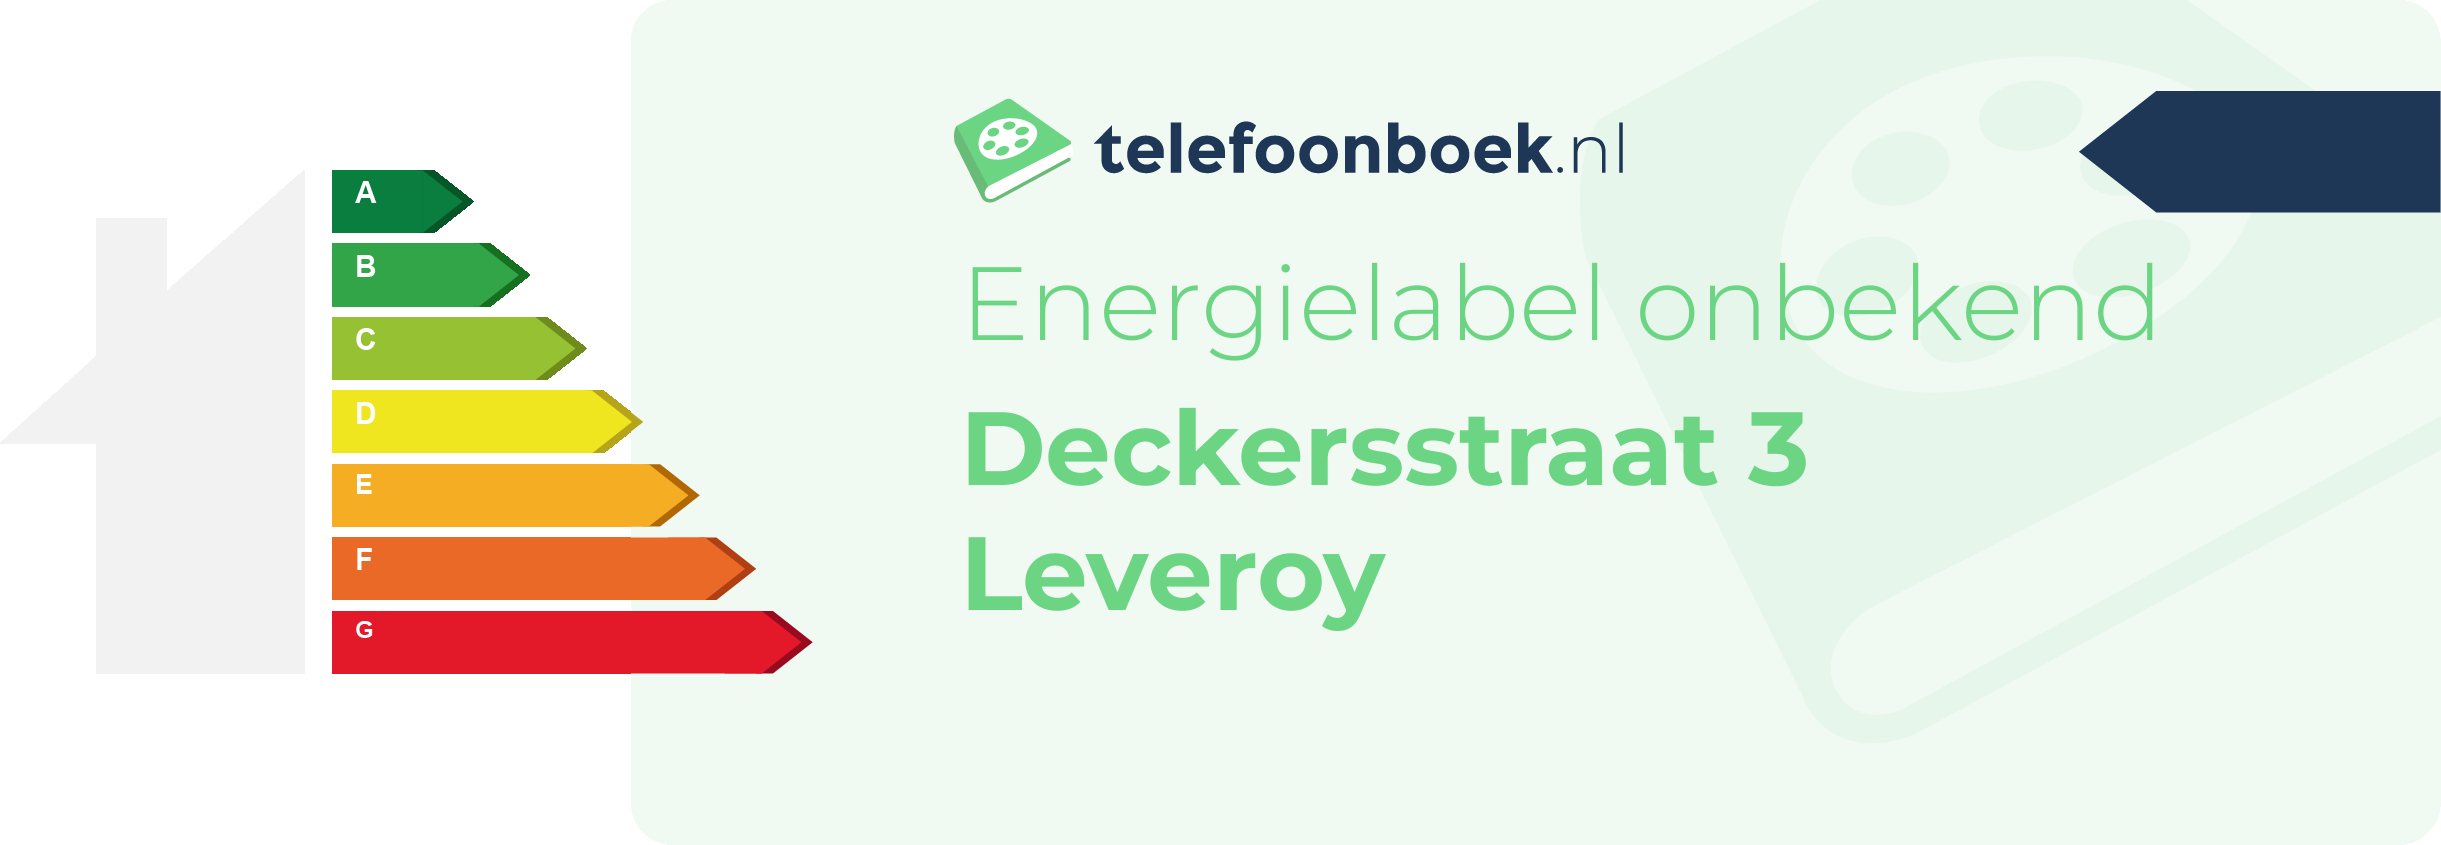 Energielabel Deckersstraat 3 Leveroy